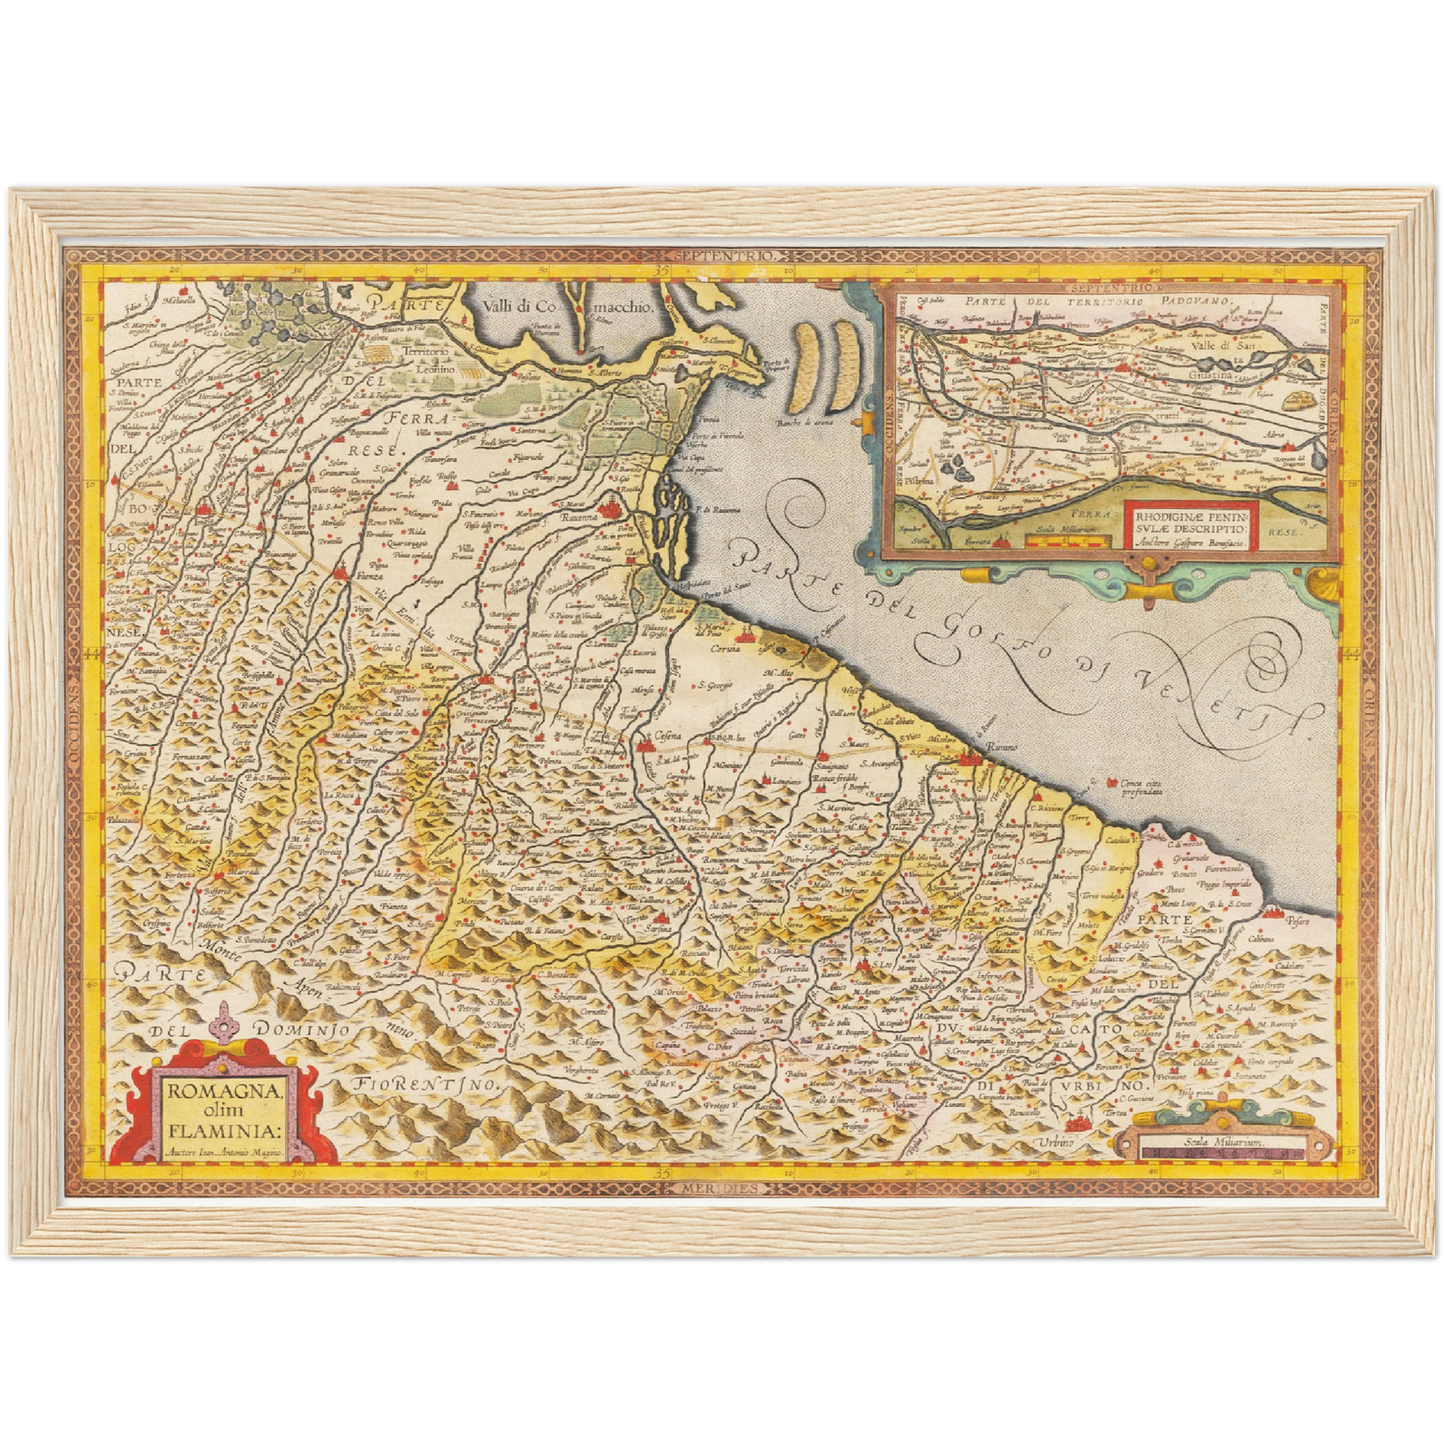 Historische Landkarte Emilia-Romagna um 1609